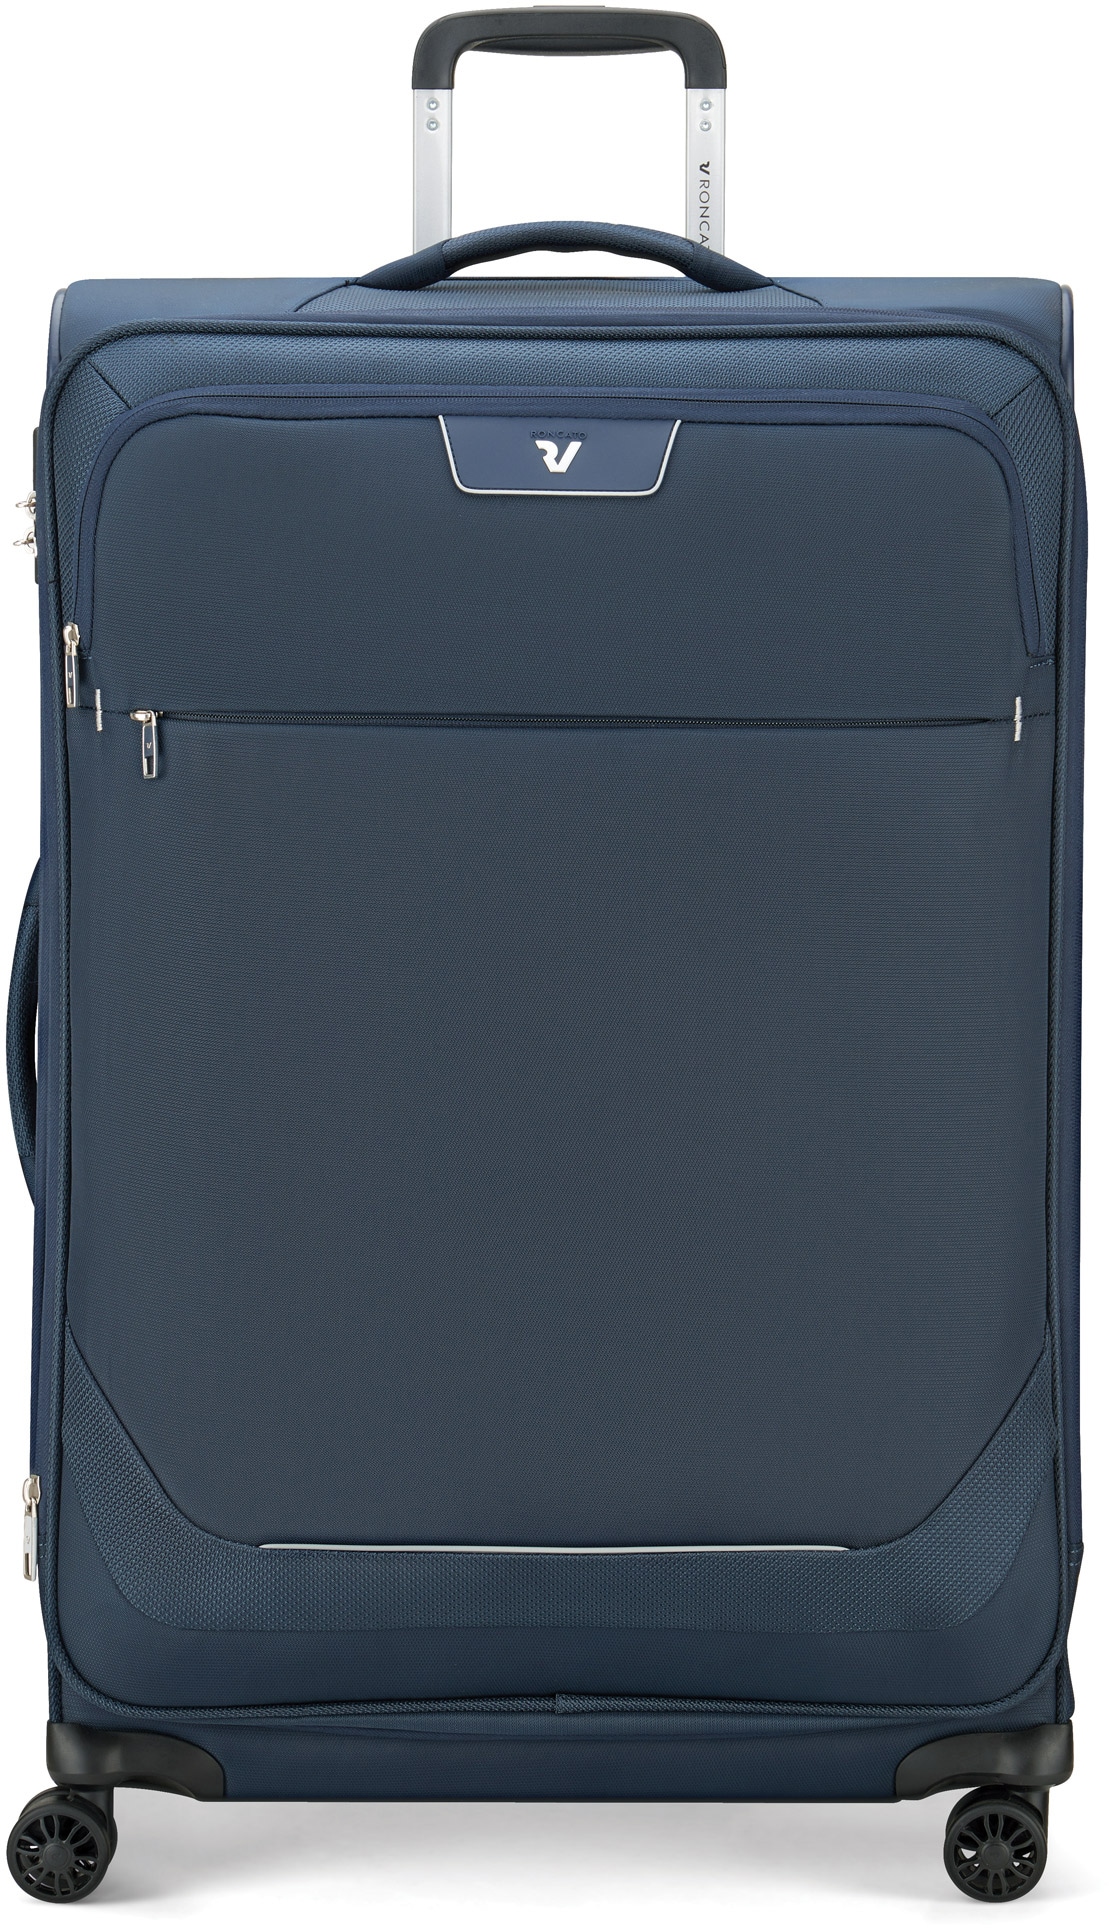 RONCATO Weichgepäck-Trolley »Joy, 75 cm«, 4 Rollen, Reisegepäck Koffer mittel groß mit Volumenerweiterung und TSA Schloss